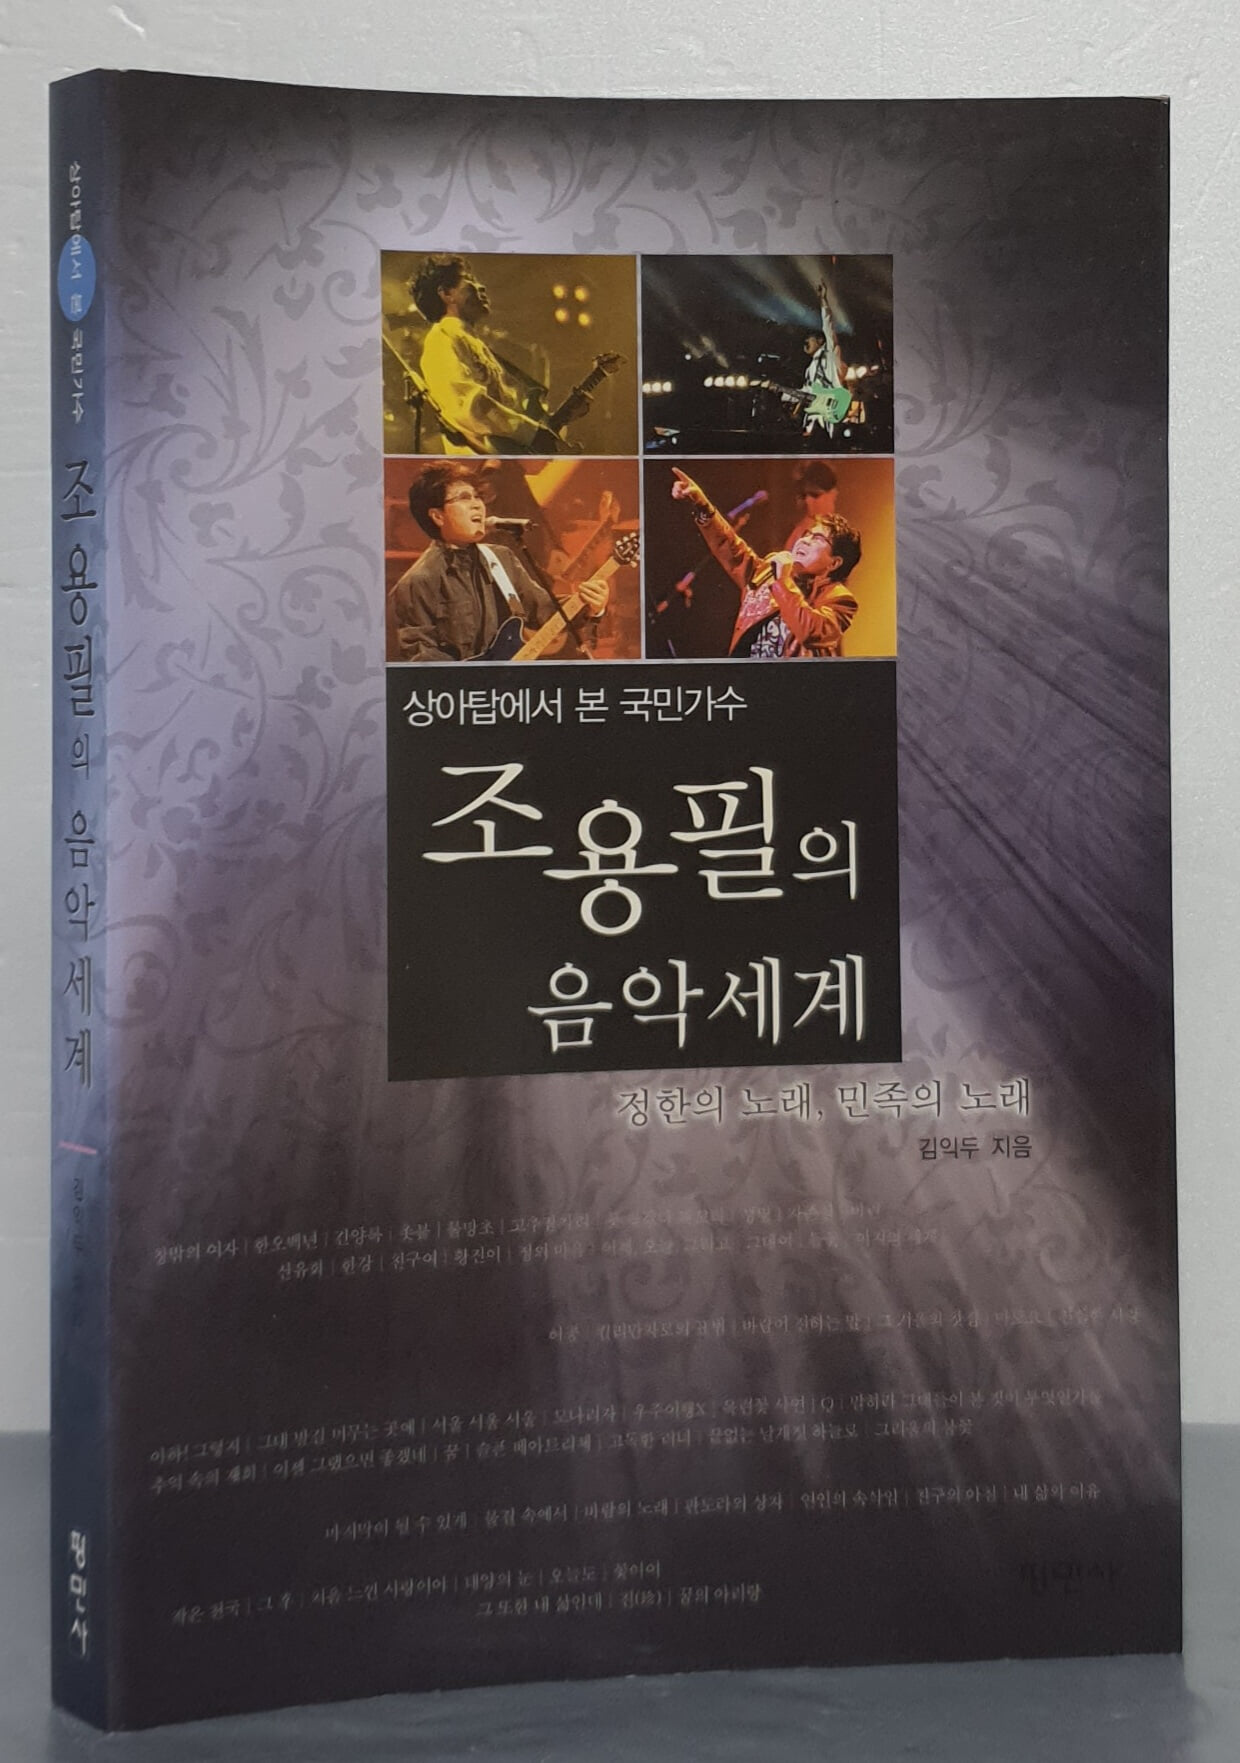 상아탑에서 본 국민가수 조용필의 음악세계 (정한의 노래, 민족의 노래)